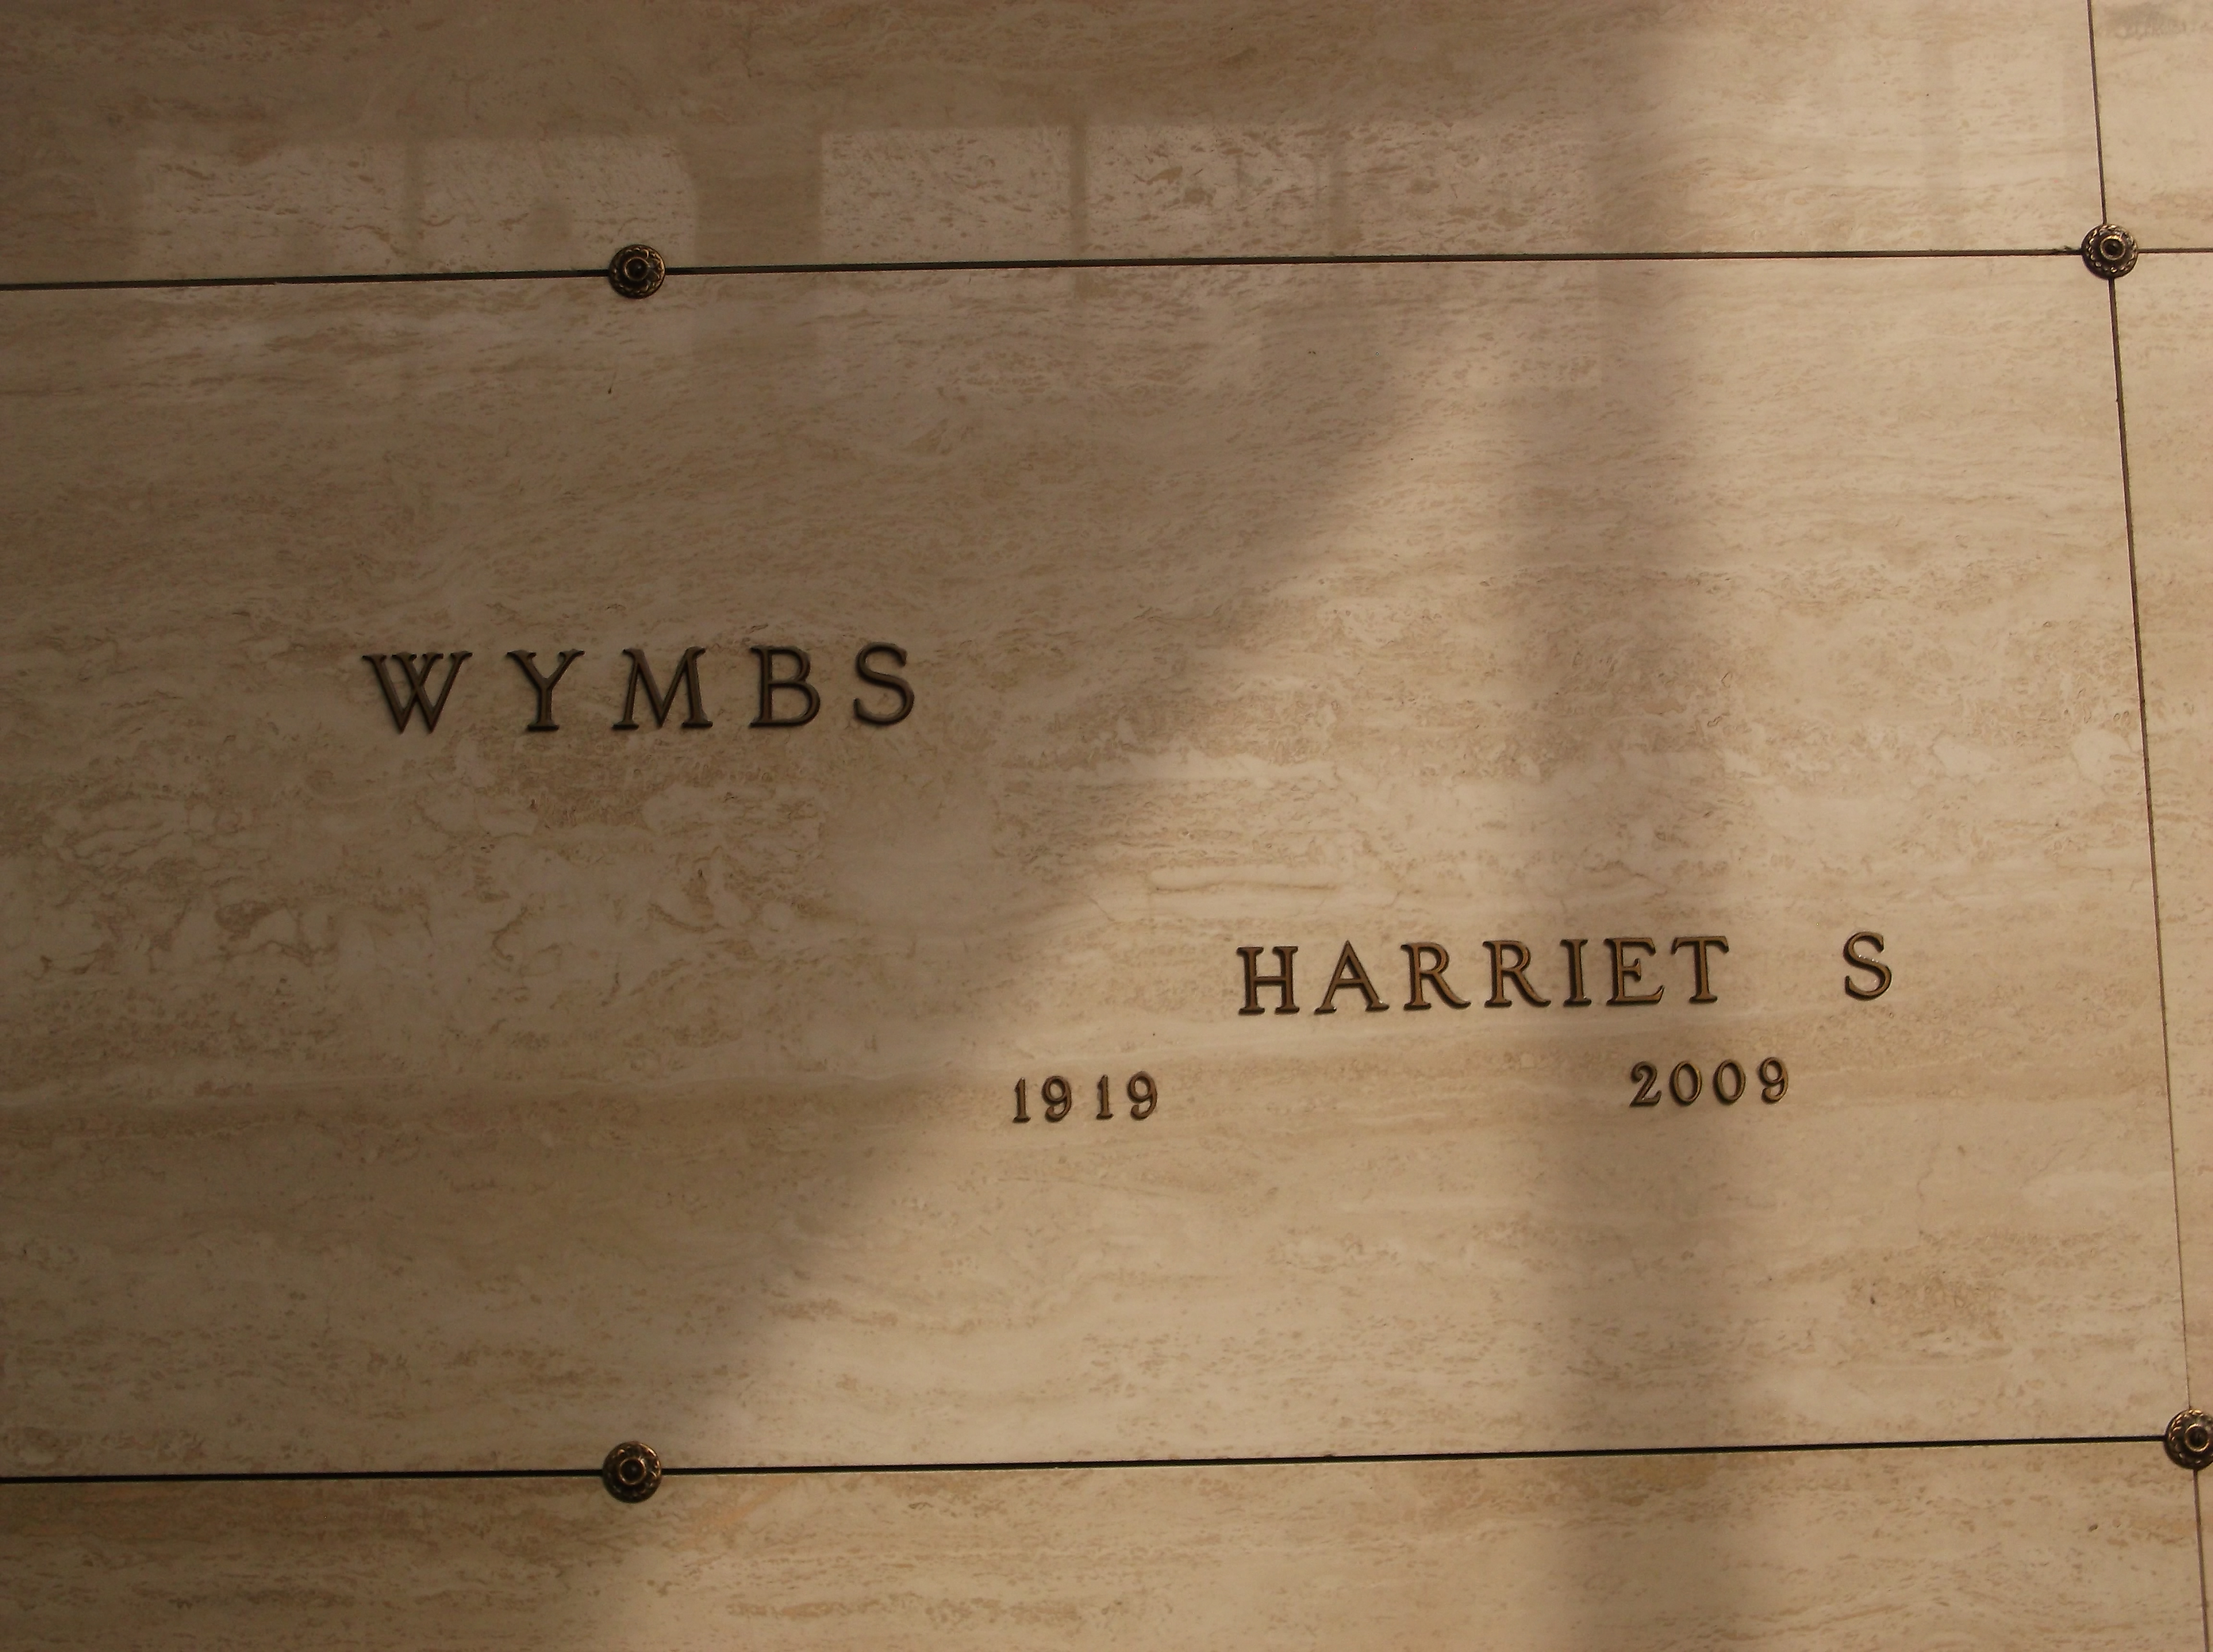 Harriet S Wymbs